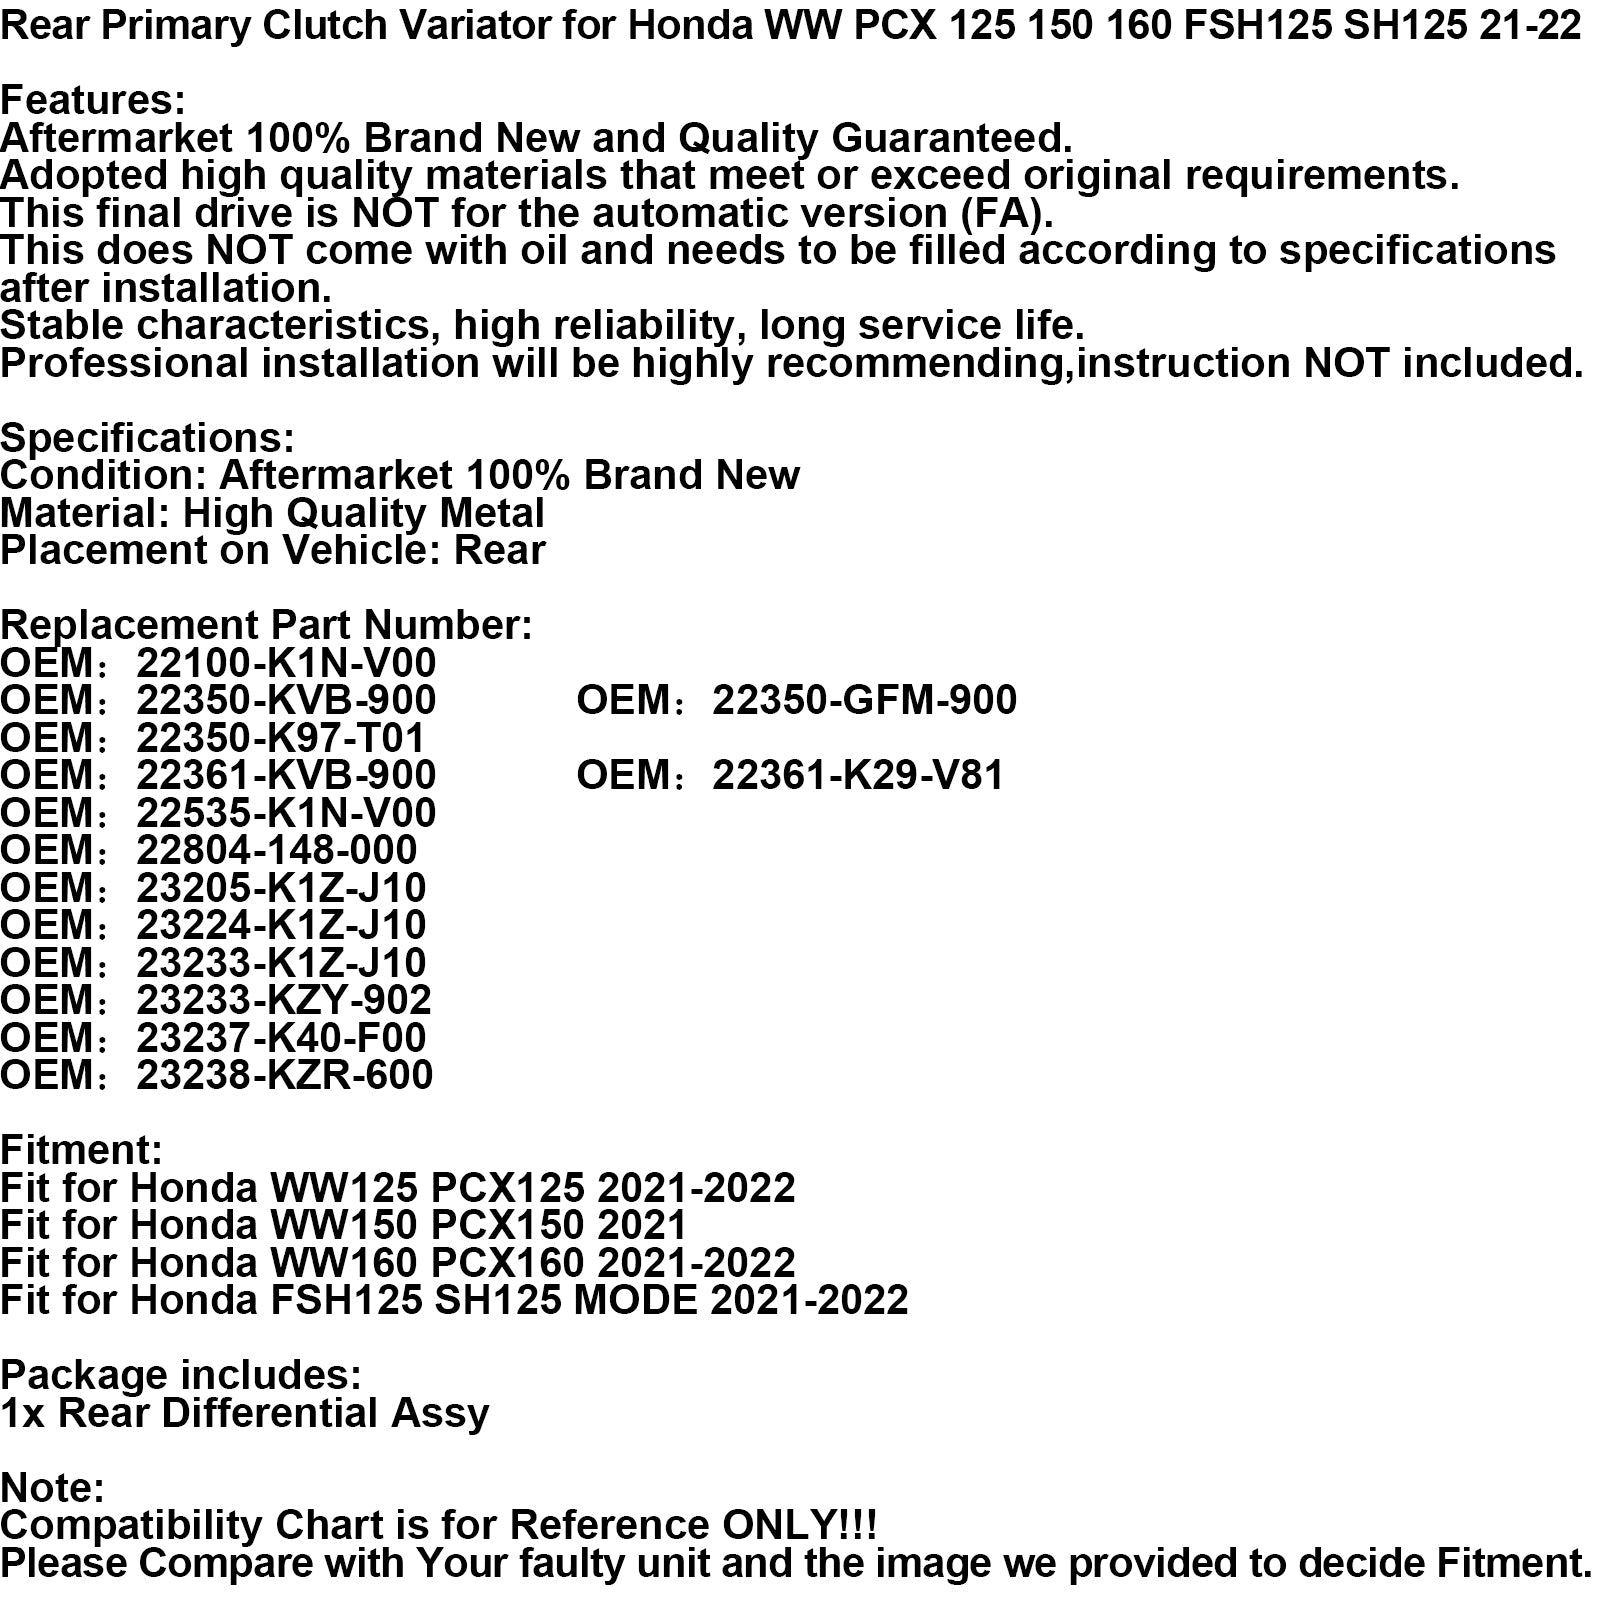 Variatore frizione posteriore primaria per Honda Ww Pcx 125 150 160 Fsh125 Sh125 21-2 Spedizione FedEx Express generica